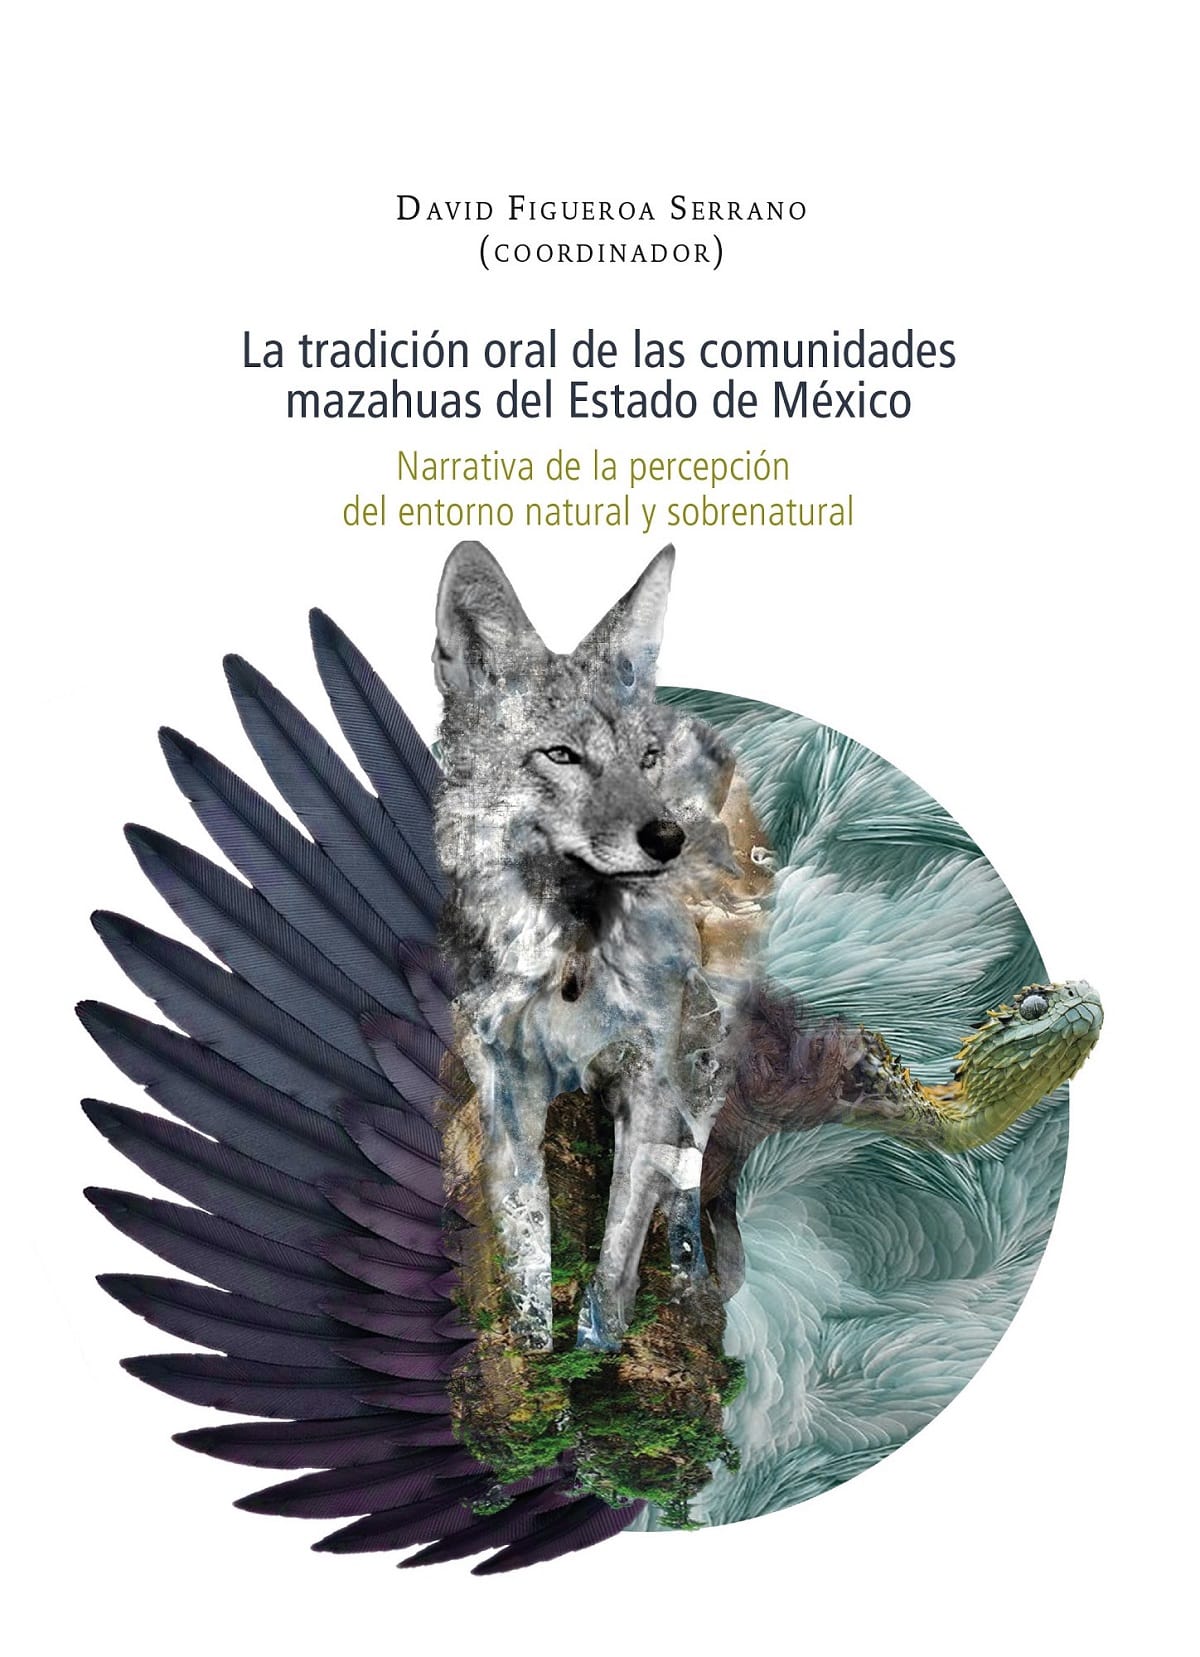 Invitan a conocer y disfrutar de la colección “Identidad” del Fondo Editorial Estado de México